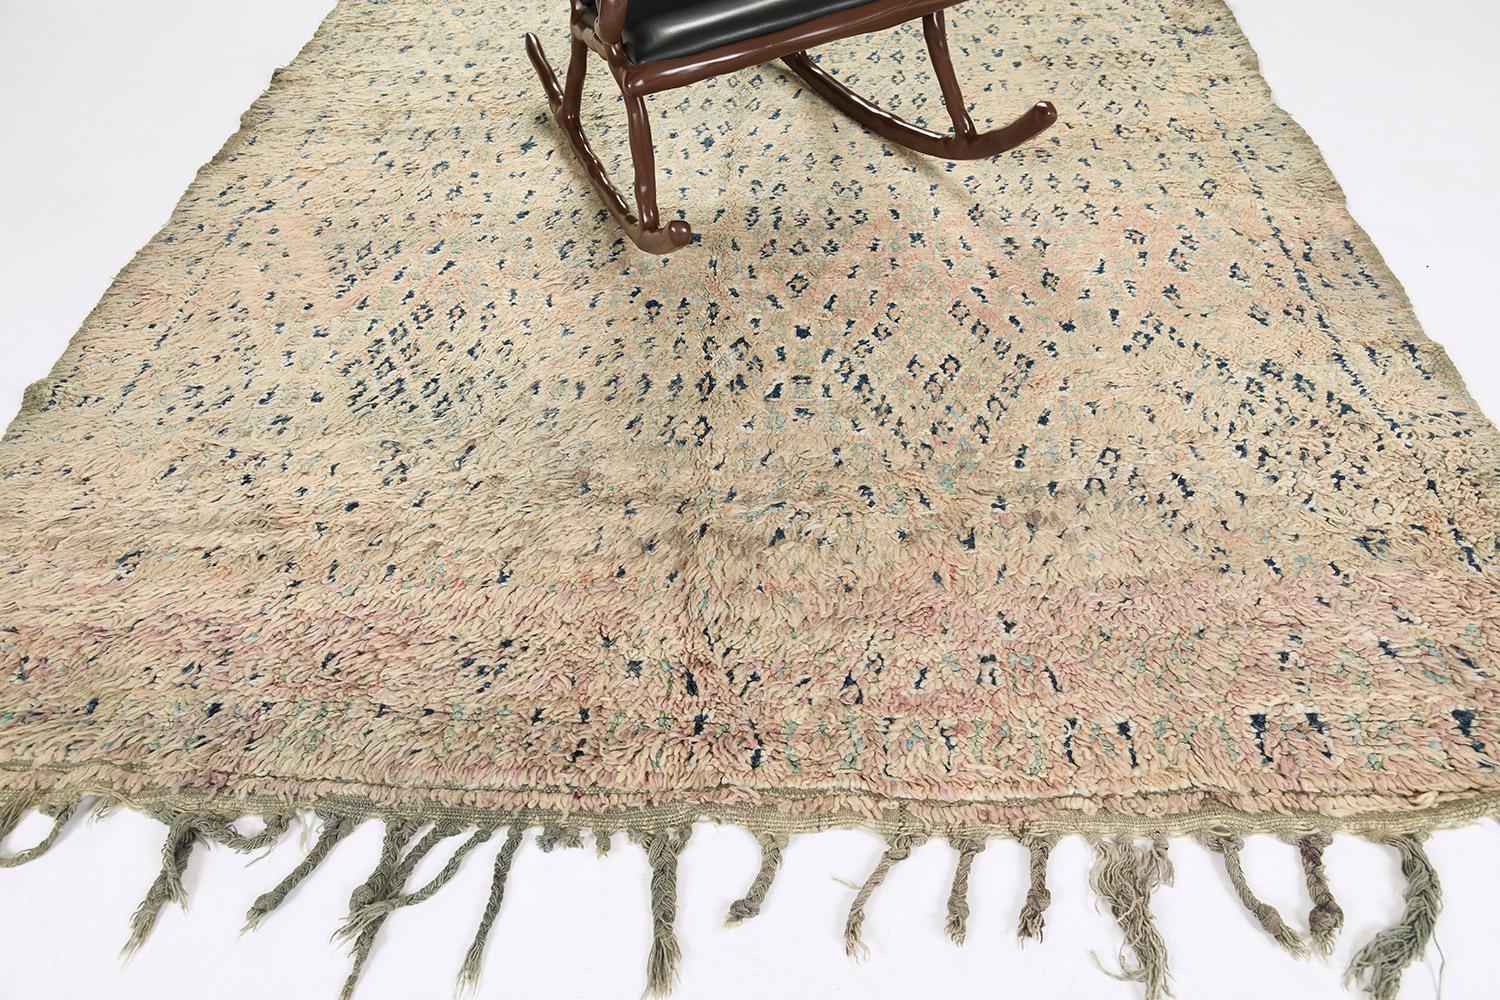 Eine ansprechende Vintage-Kreation des marokkanischen Beni M'Guild-Teppichs, der die Kultur der marokkanischen Stämme durch mehrdeutige Berbermotive zeigt. Mit seinen erdigen Kombinationen eignet sich dieser wunderschöne Teppich perfekt für jeden